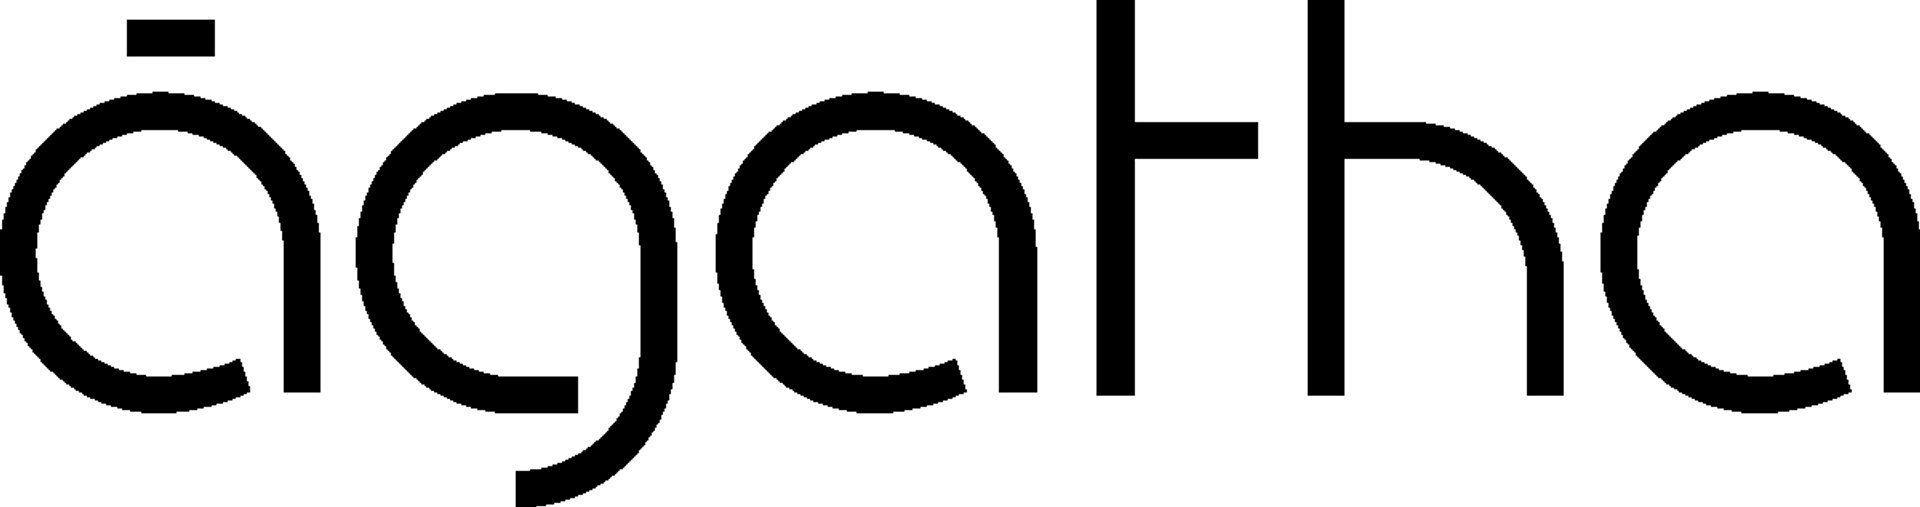 ÁGATHA logo